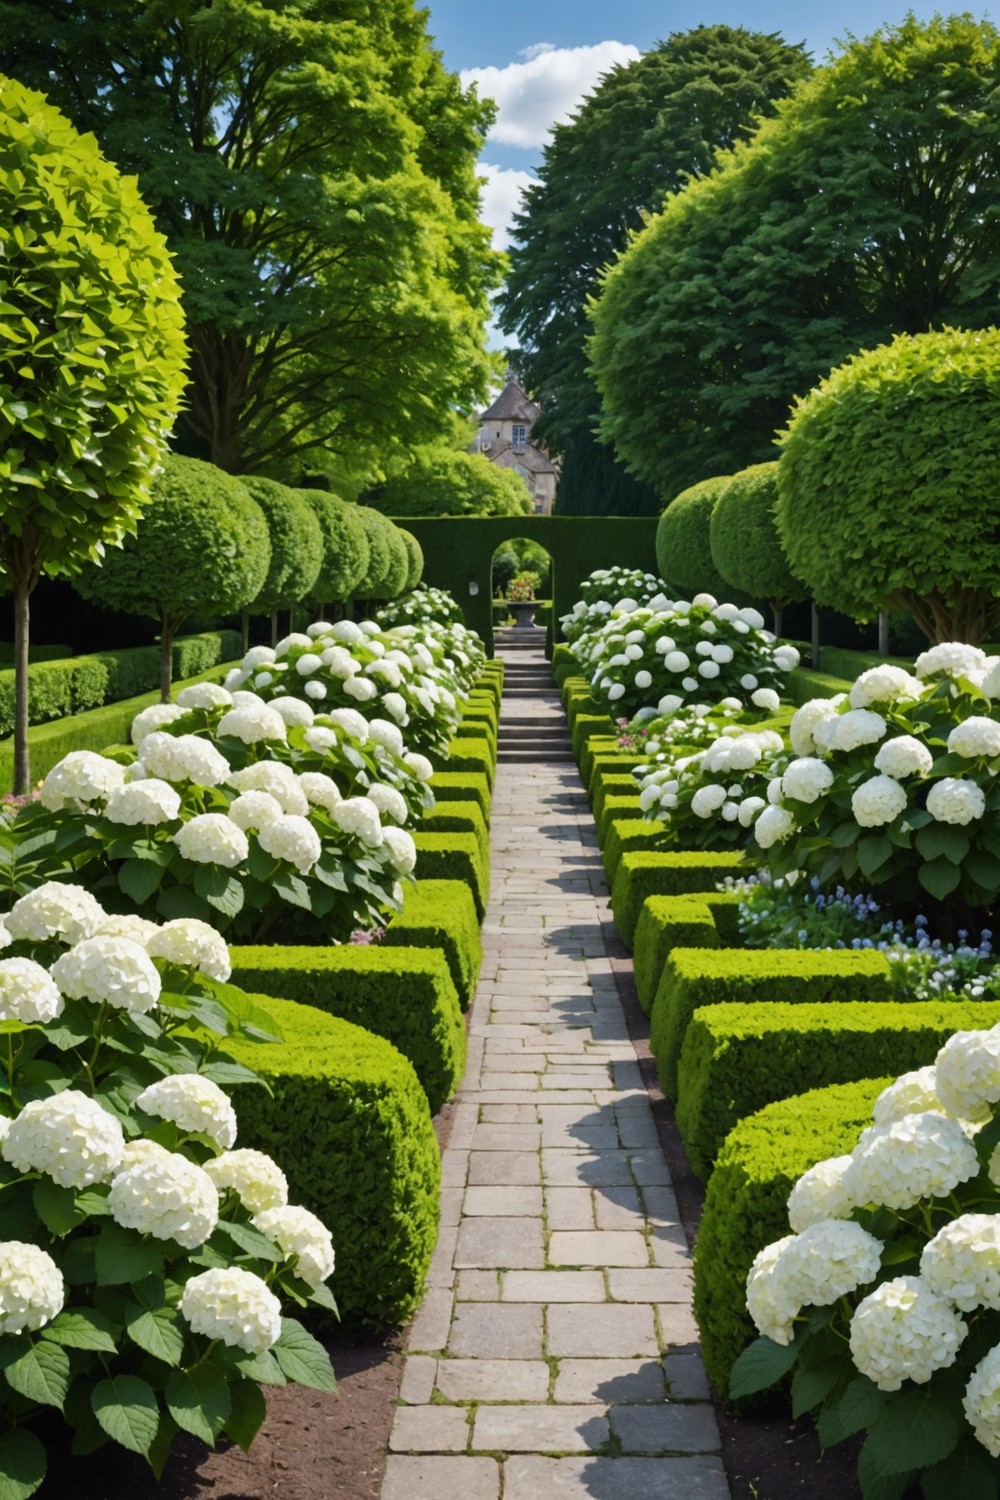 Hydrangeas in a Formal Garden